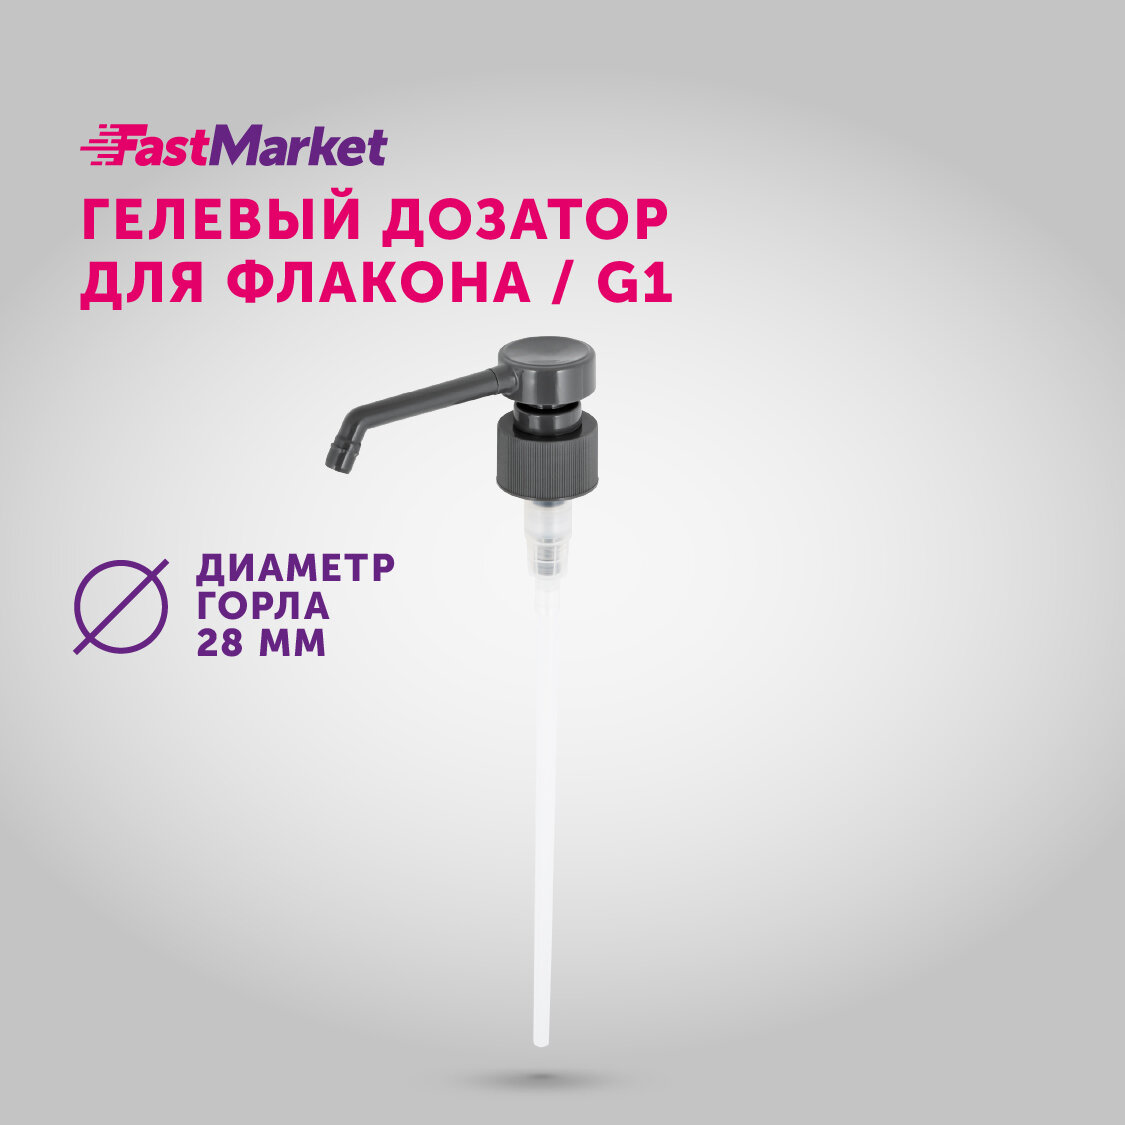 Сменный дозатор косметический насосный, помпа для флакона, для шампуня, жидкого мыла, моющего средства FastMarket, диаметр 28 мм